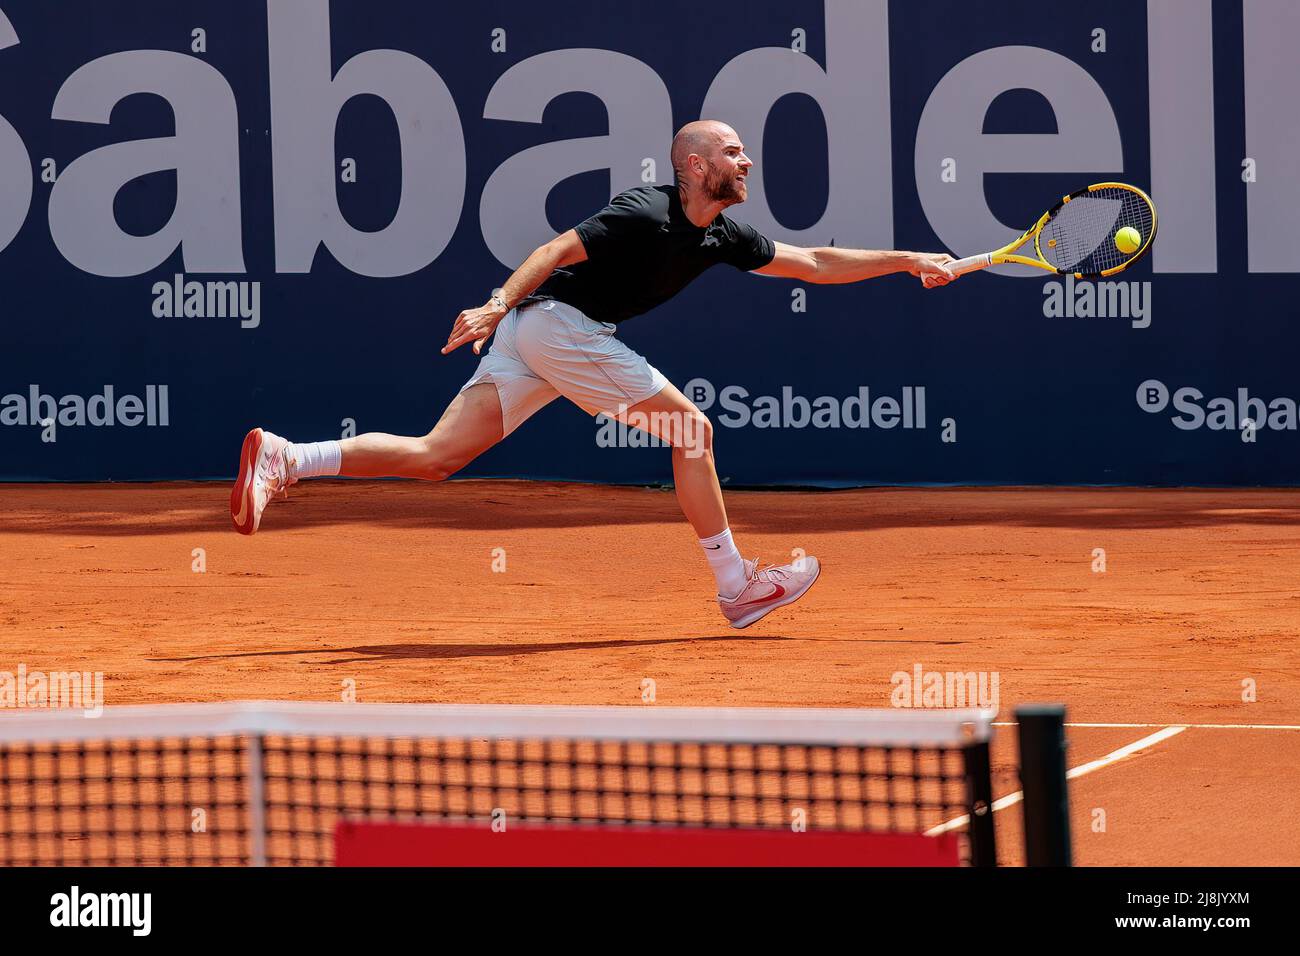 BARCELONE - APR 18: Adrian Mannarino en action pendant le tournoi de tennis du Banc Sabadell ouvert de Barcelone au Real Club de Tenis Barcelone le 18 avril, Banque D'Images